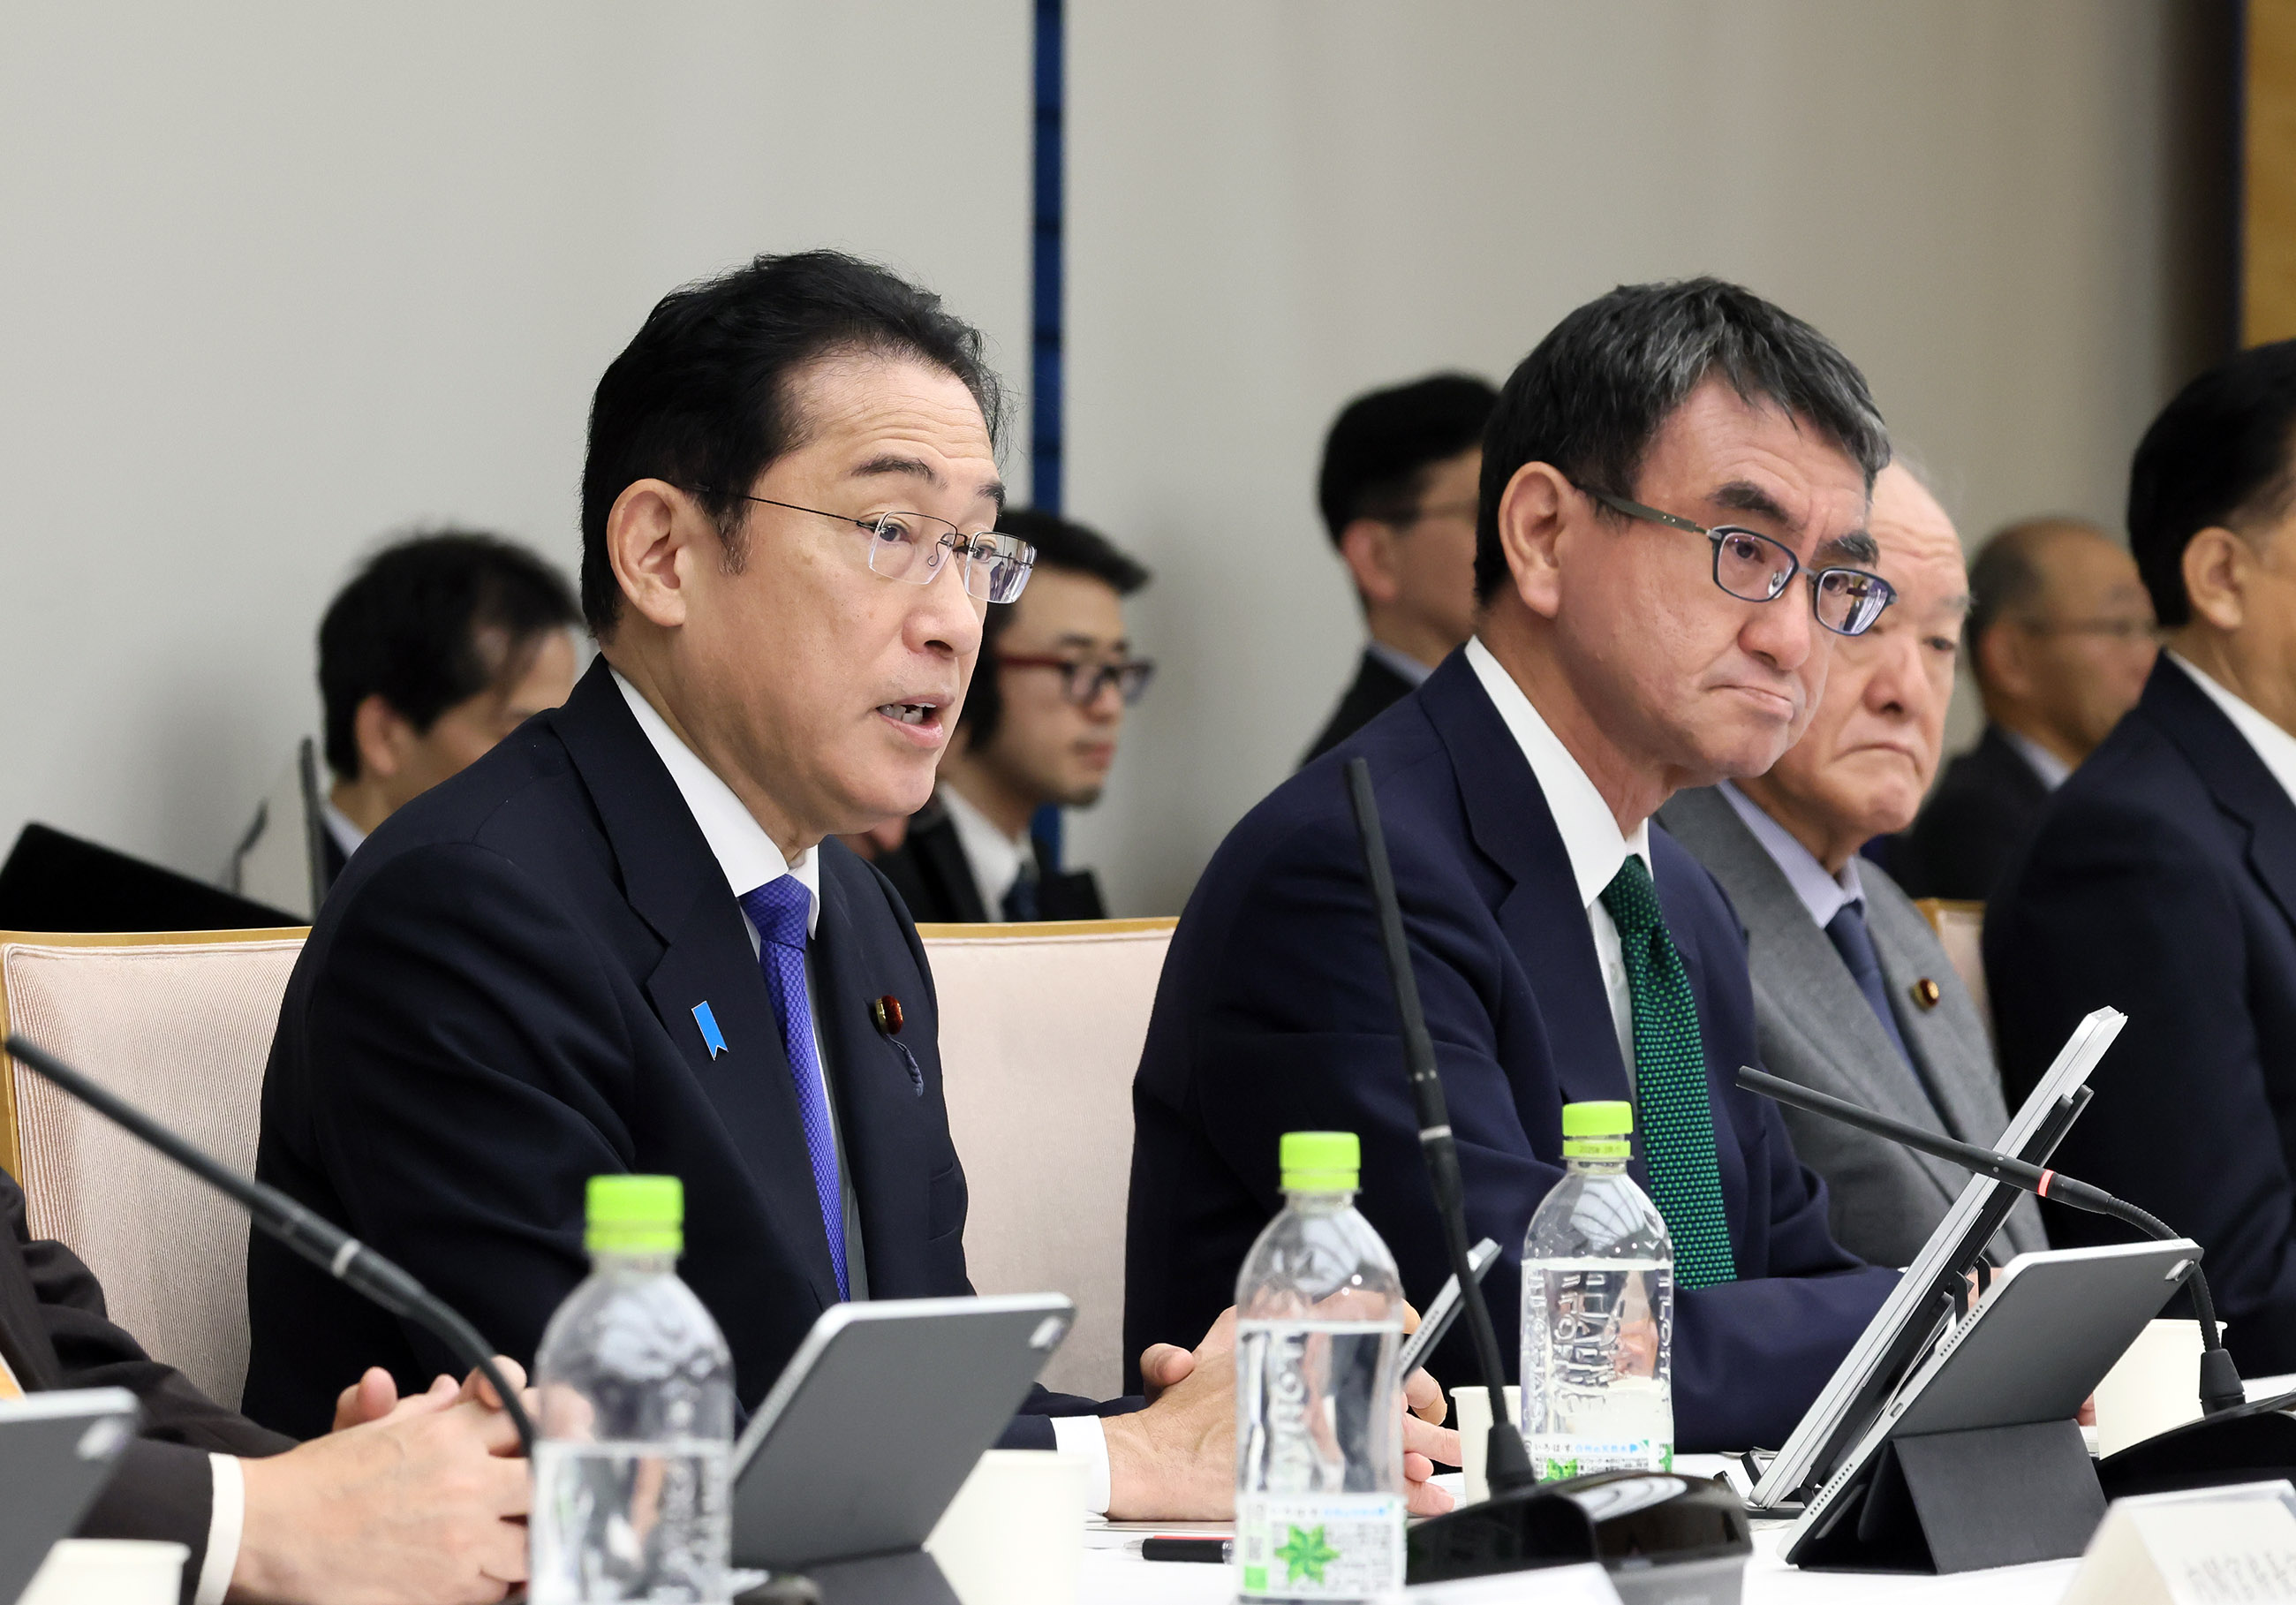 デジタル行財政改革会議のとりまとめを行う岸田文雄首相